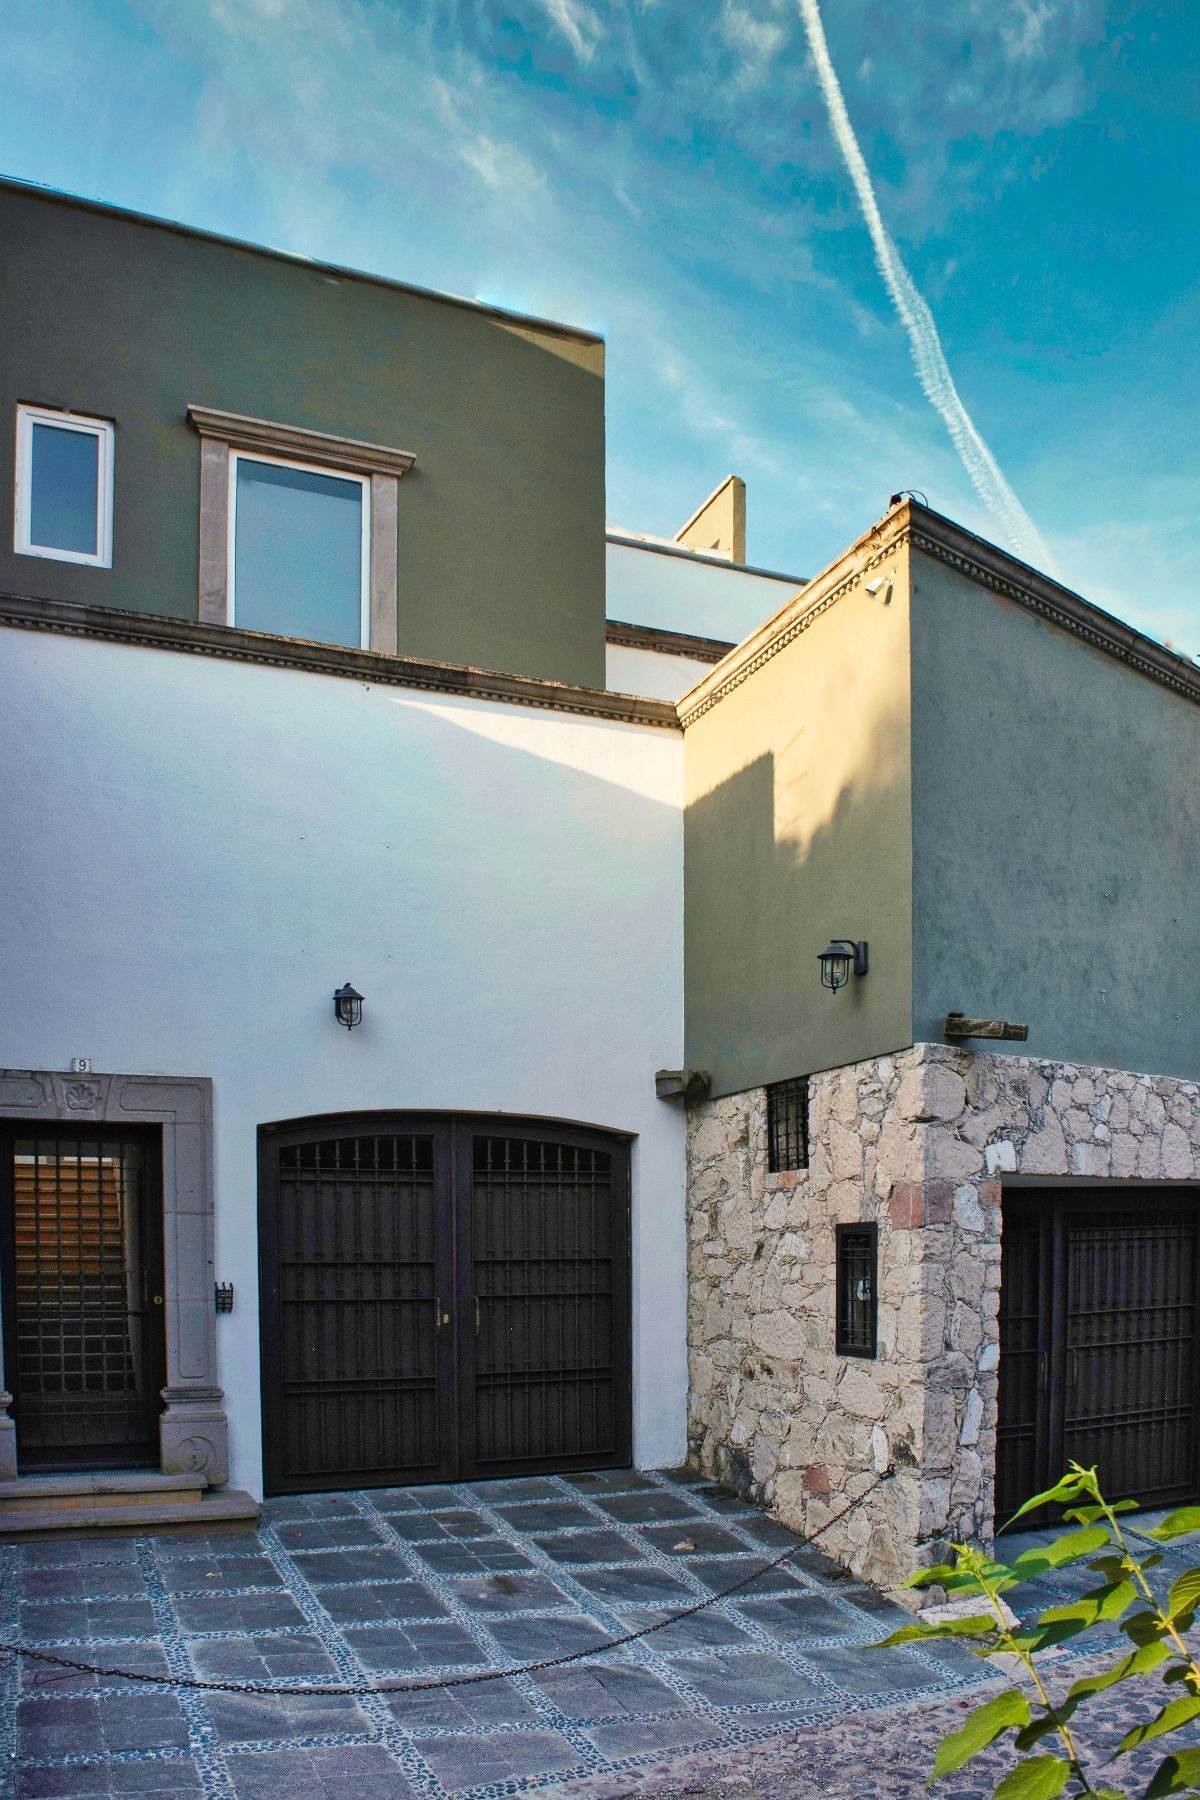 Property en Casa Alba Camino Real a Xichu #9, Guadiana San Miguel De Allende, Guanajuato 37770 México